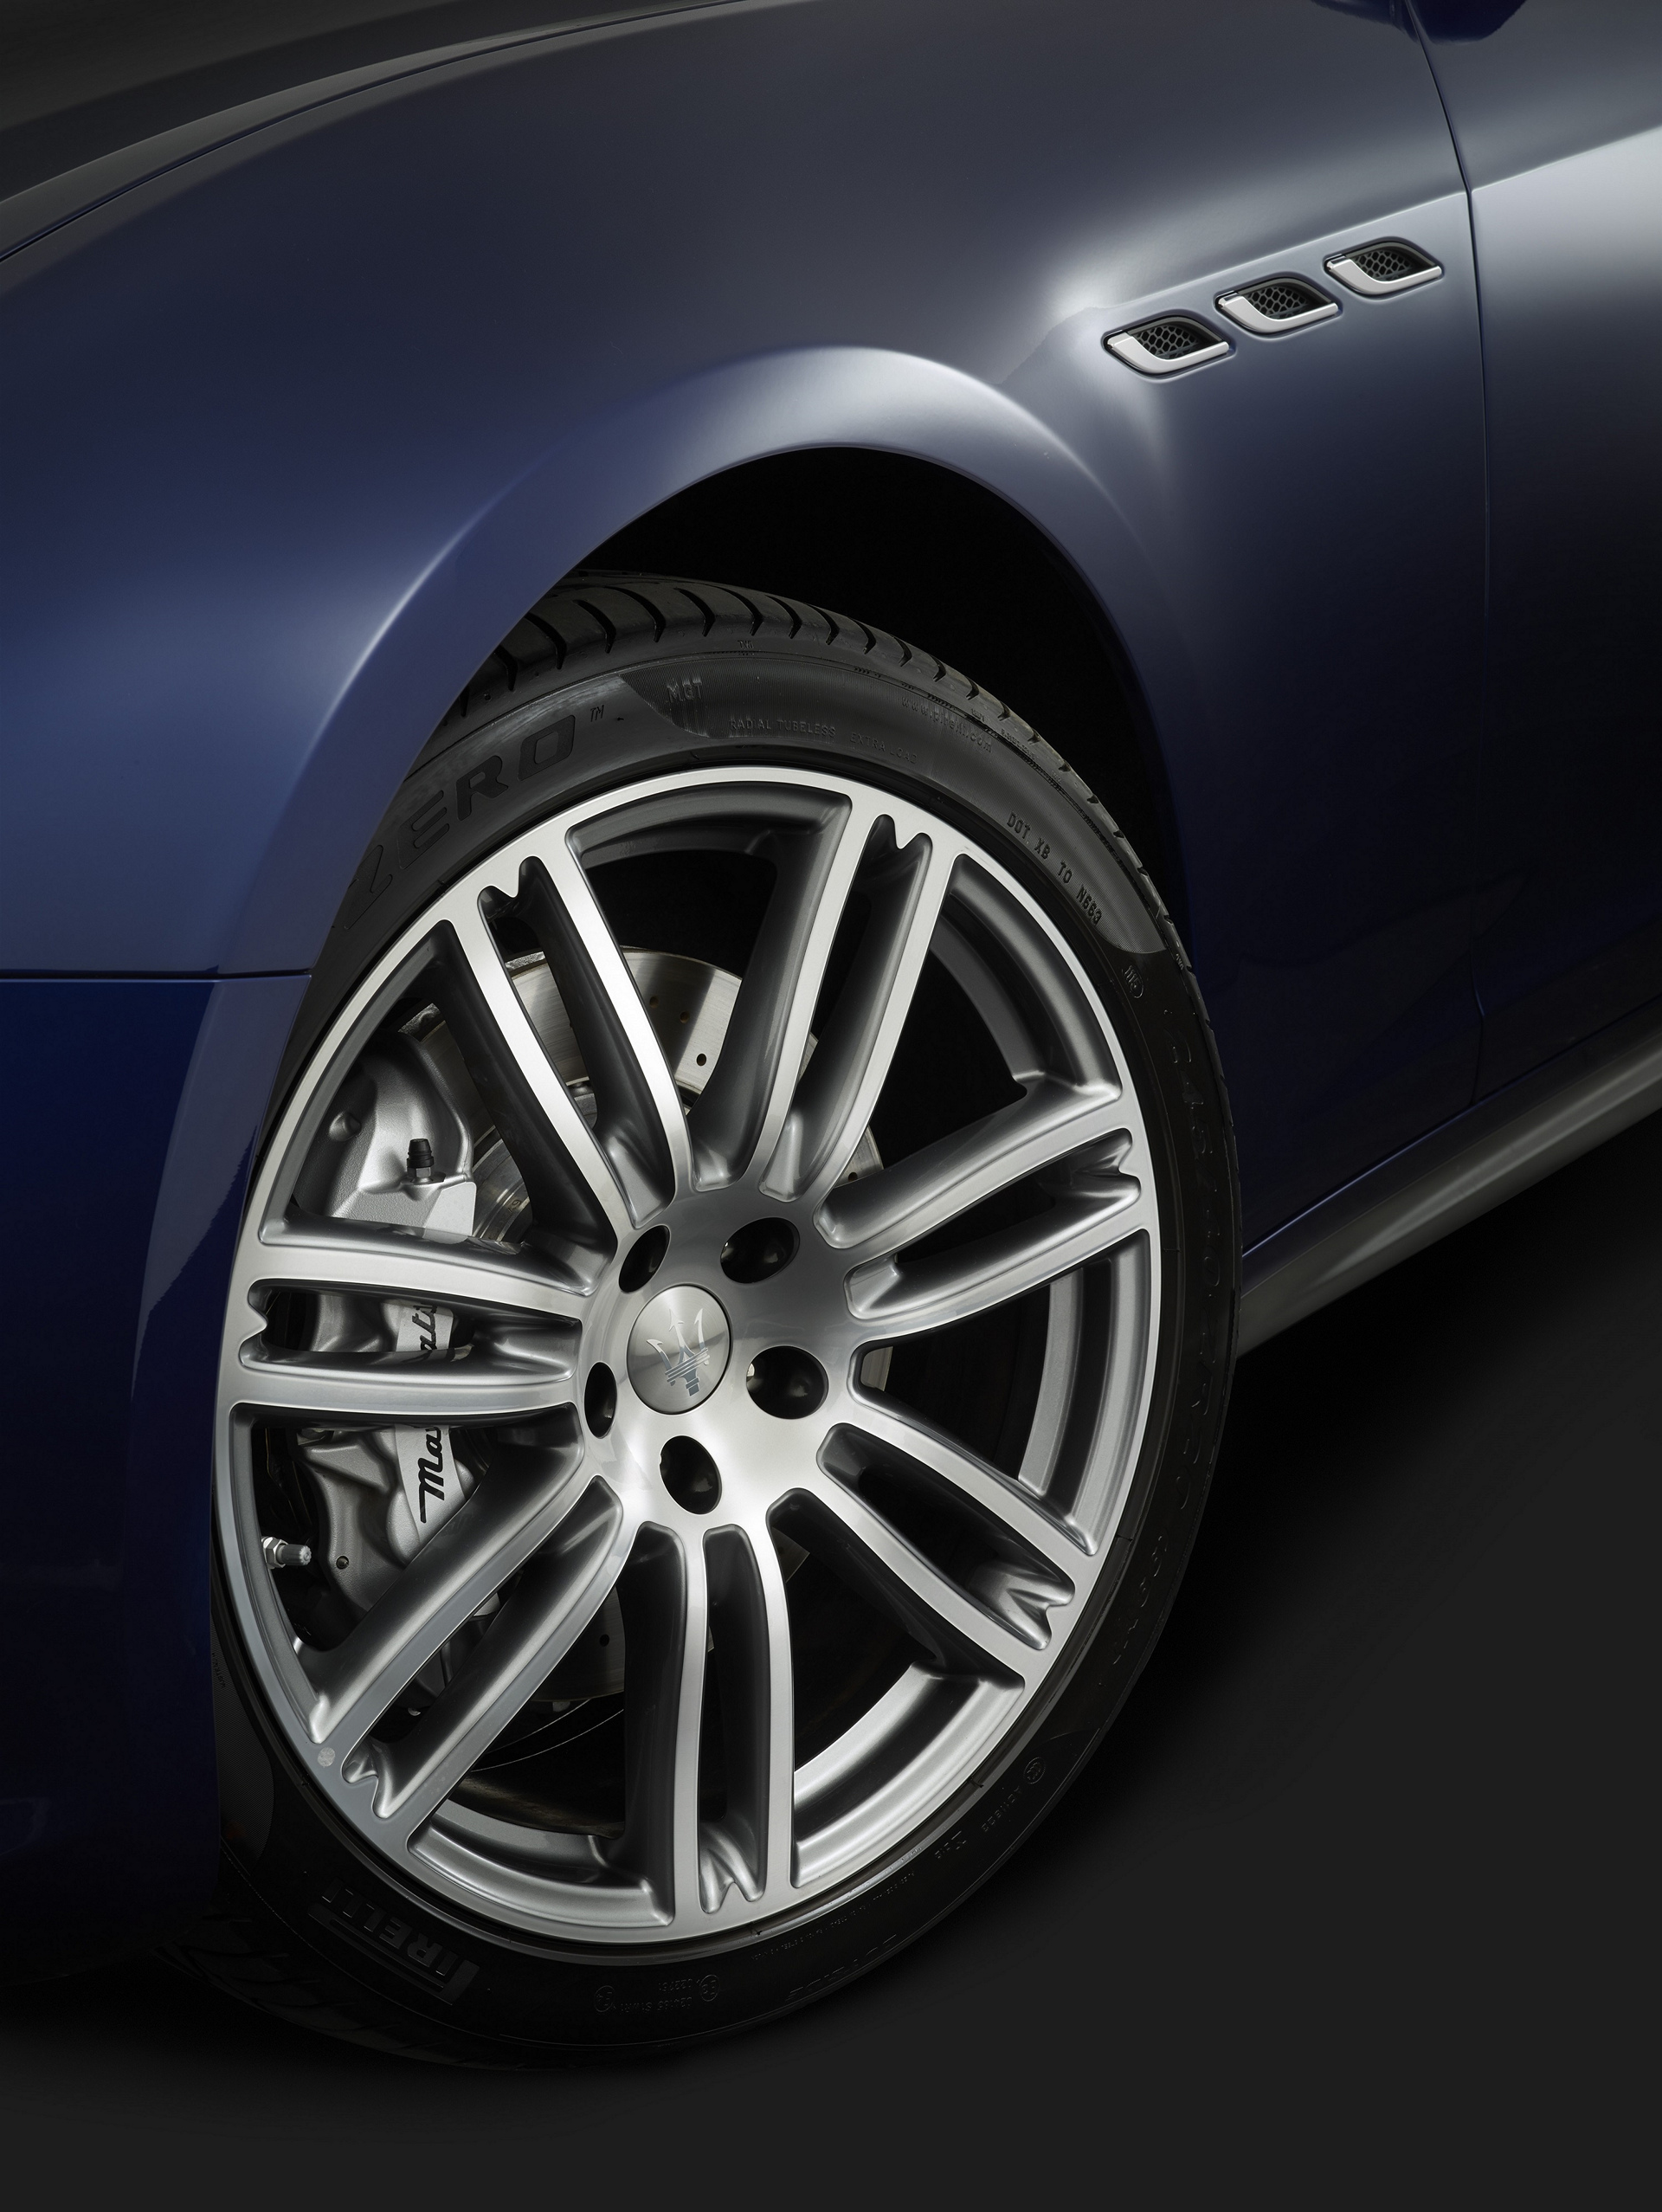 Maserati Ghibli © Fiat Chrysler Automobiles N.V.